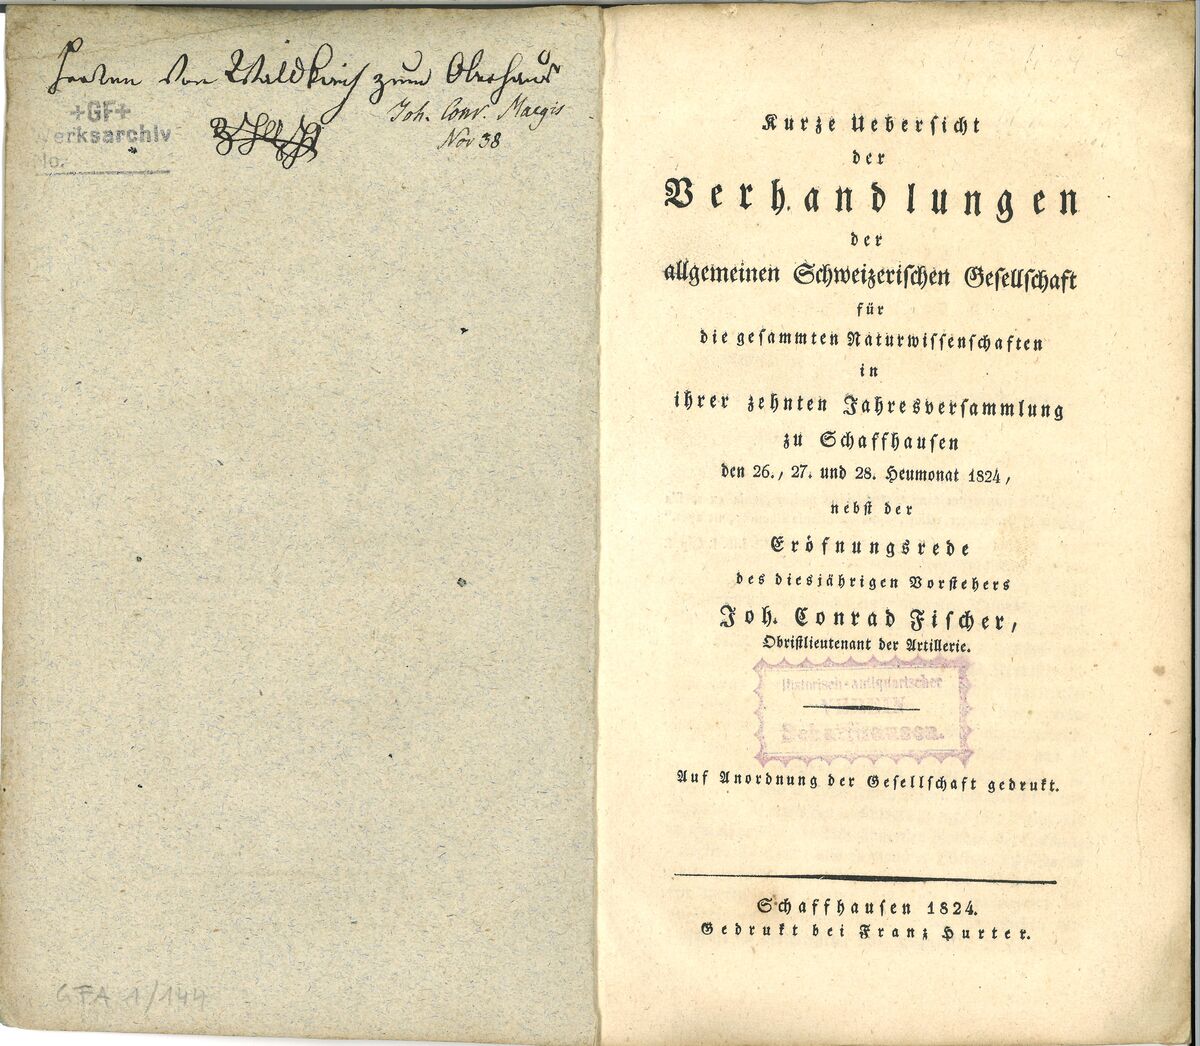 GFD 1/50: Titelblatt der Publikation zur Jahresversammlung der «Allgemeinen Schweizerischen Gesellschaft für die Gesammten Naturwissenschaften» unter dem Vorsitz von Johann Conrad Fischer, 1824